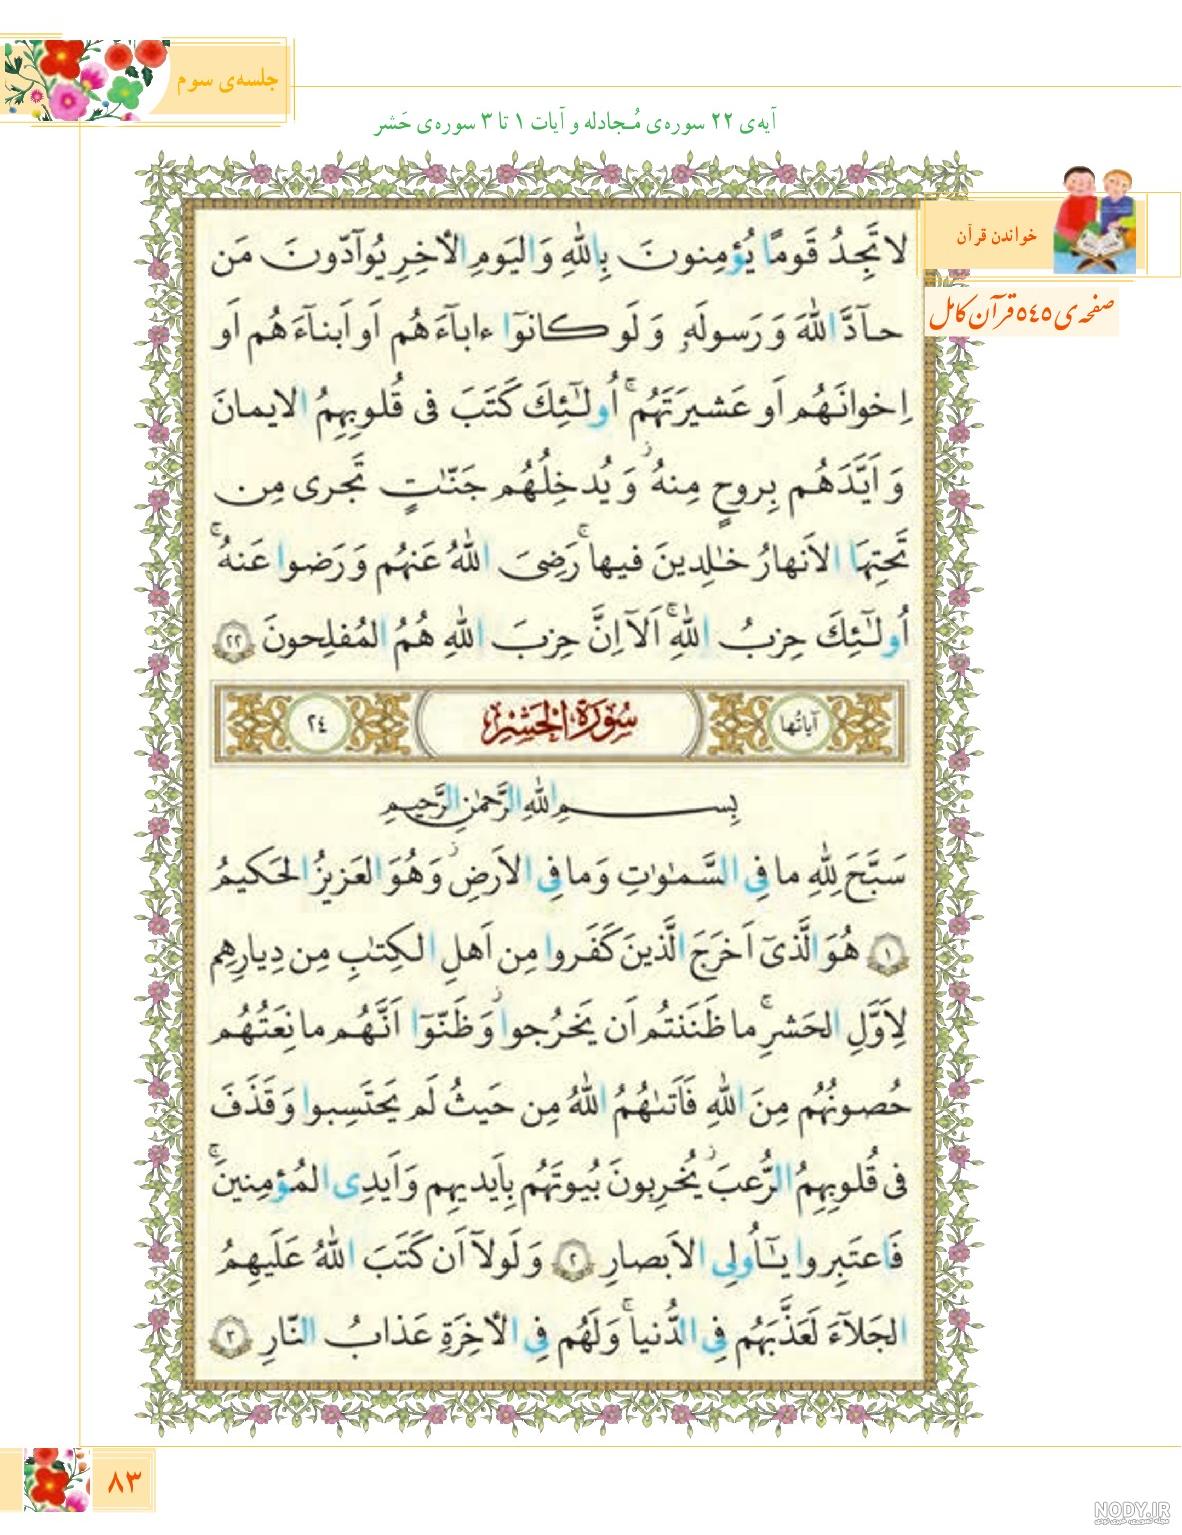 معنی کلمات قرآن ششم درس اول